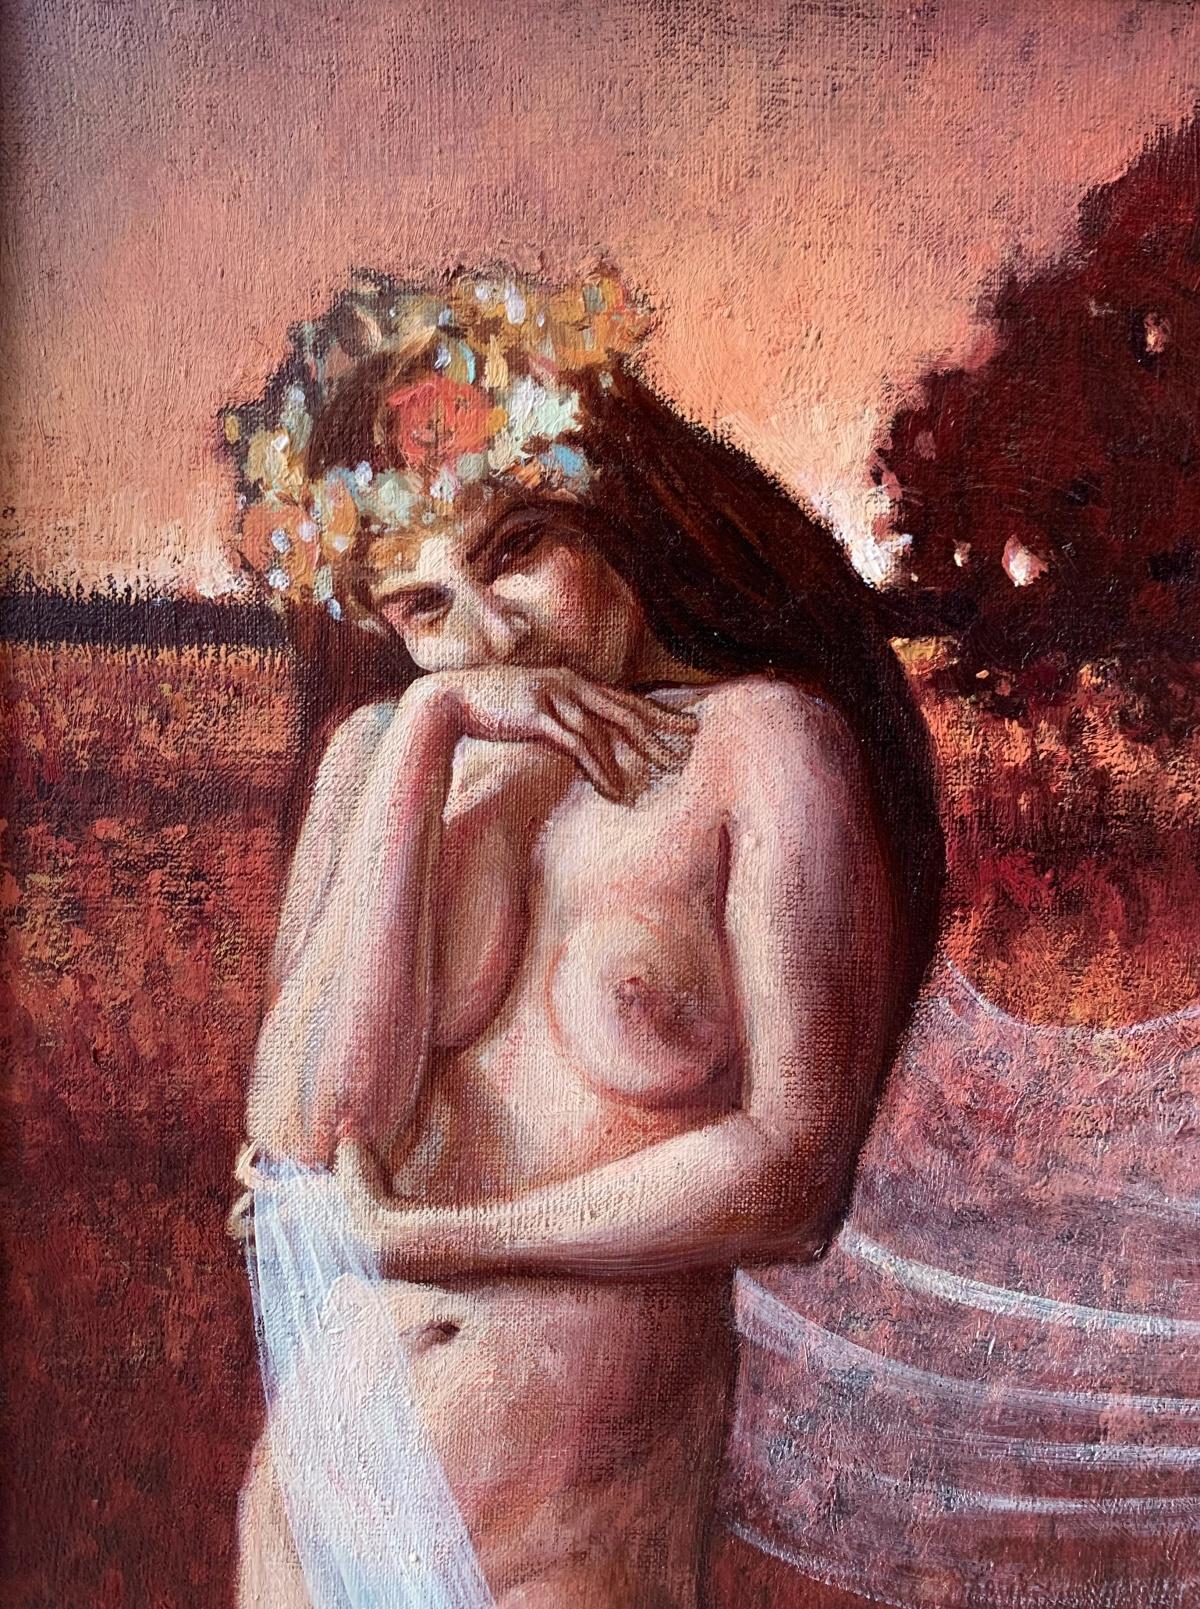 Zeitgenössisches figuratives Ölgemälde ohne Titel, subtiles weibliches Porträt, lebhaft (Romantik), Painting, von Katarzyna Szydlowska